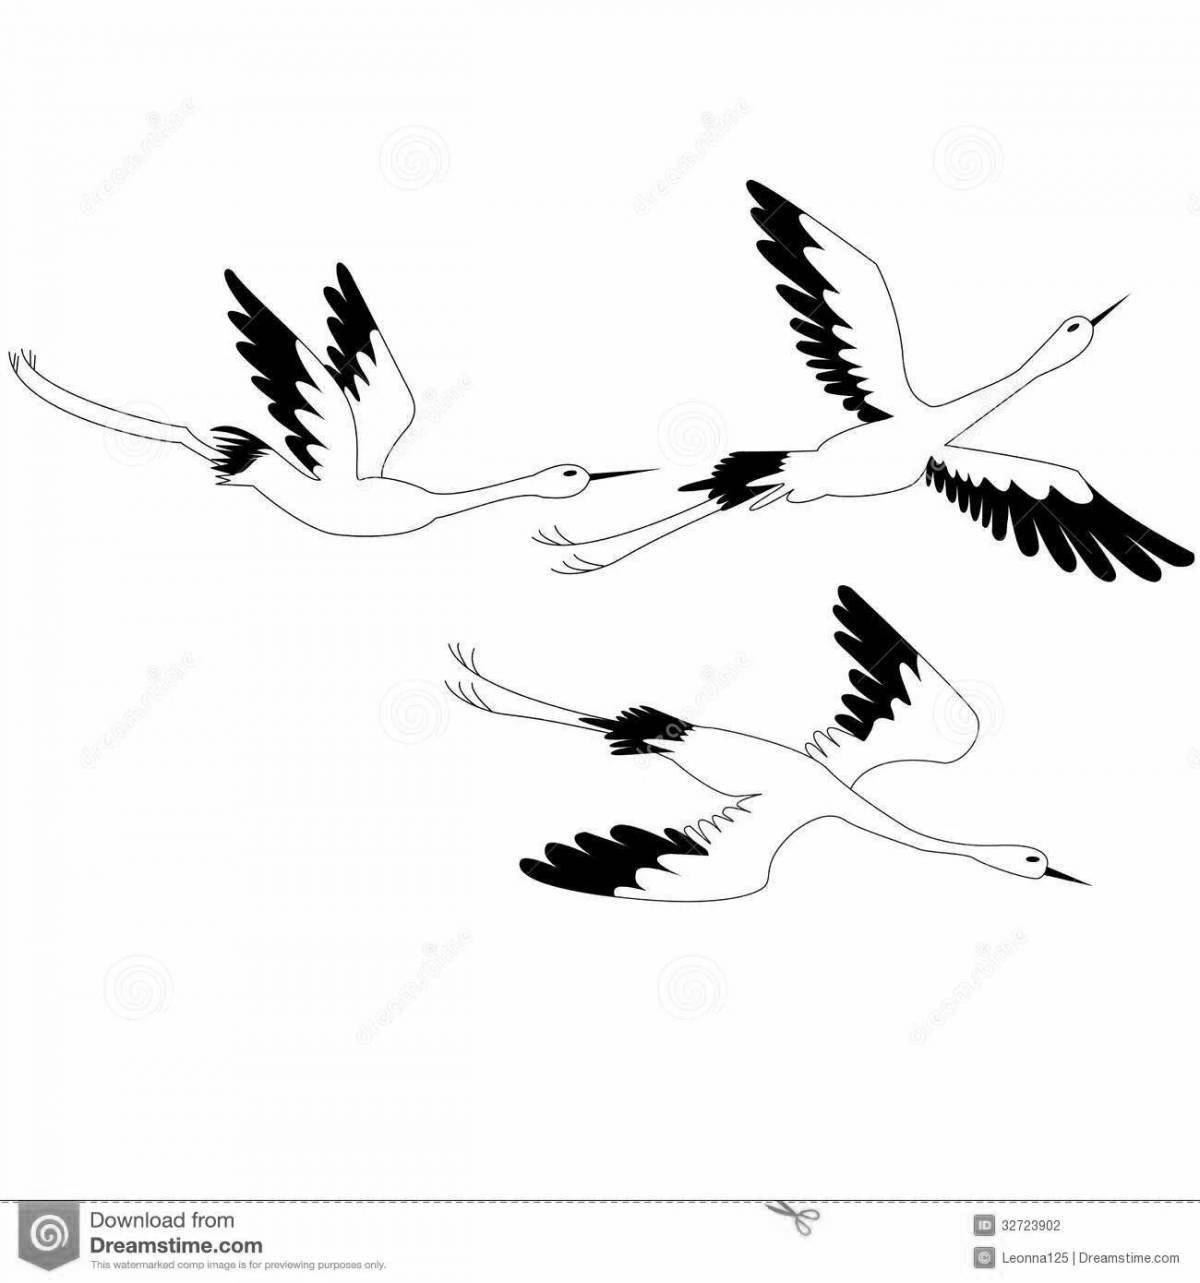 Serene cranes fly for children